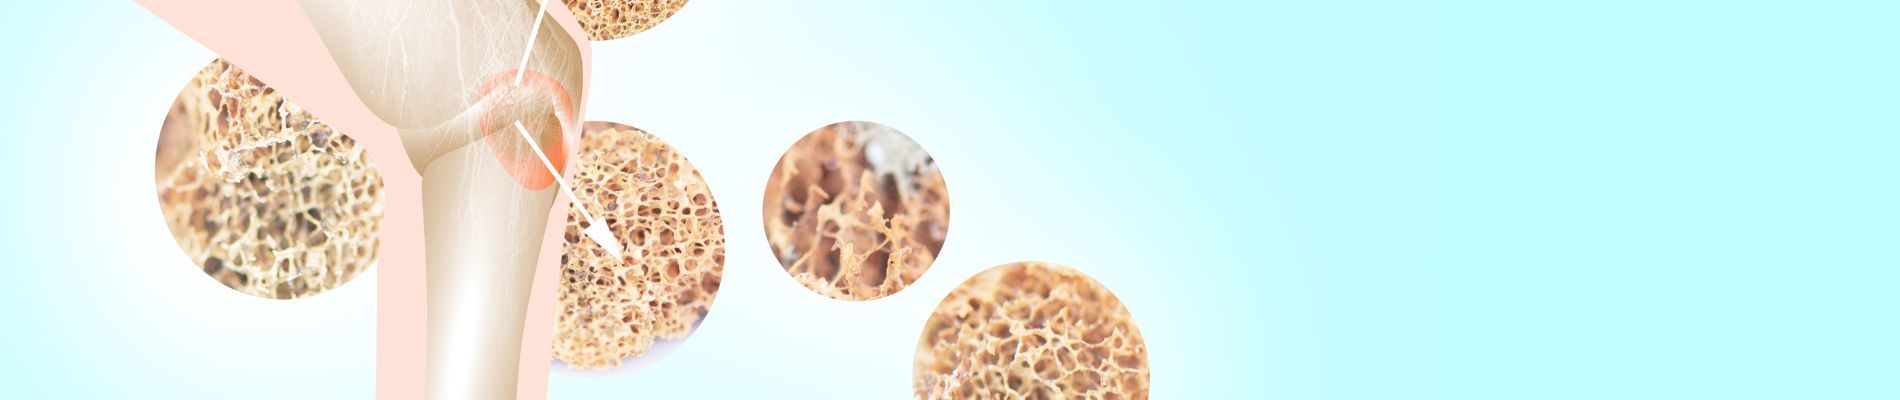 Knochendichtemessung - Diagnose Osteoporose absichern